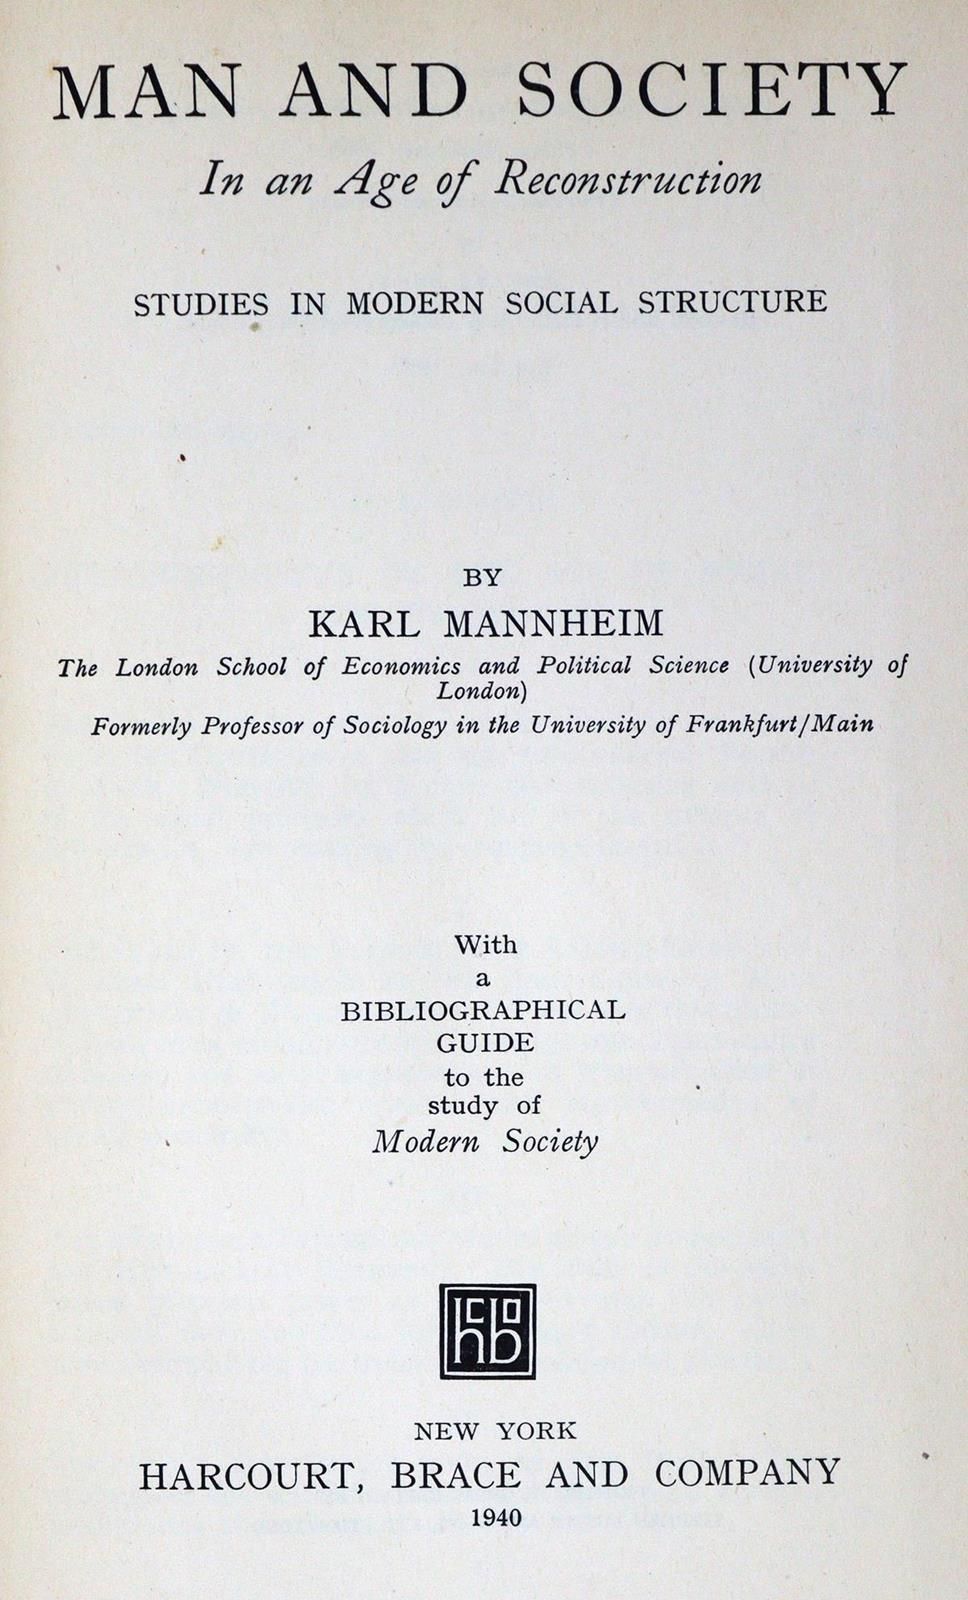 Mannheim,K. 重建时代的人与社会。现代社会结构研究。附有现代社会研究的书目指南。纽约，Harcourt, Brace and Company 1940&hellip;